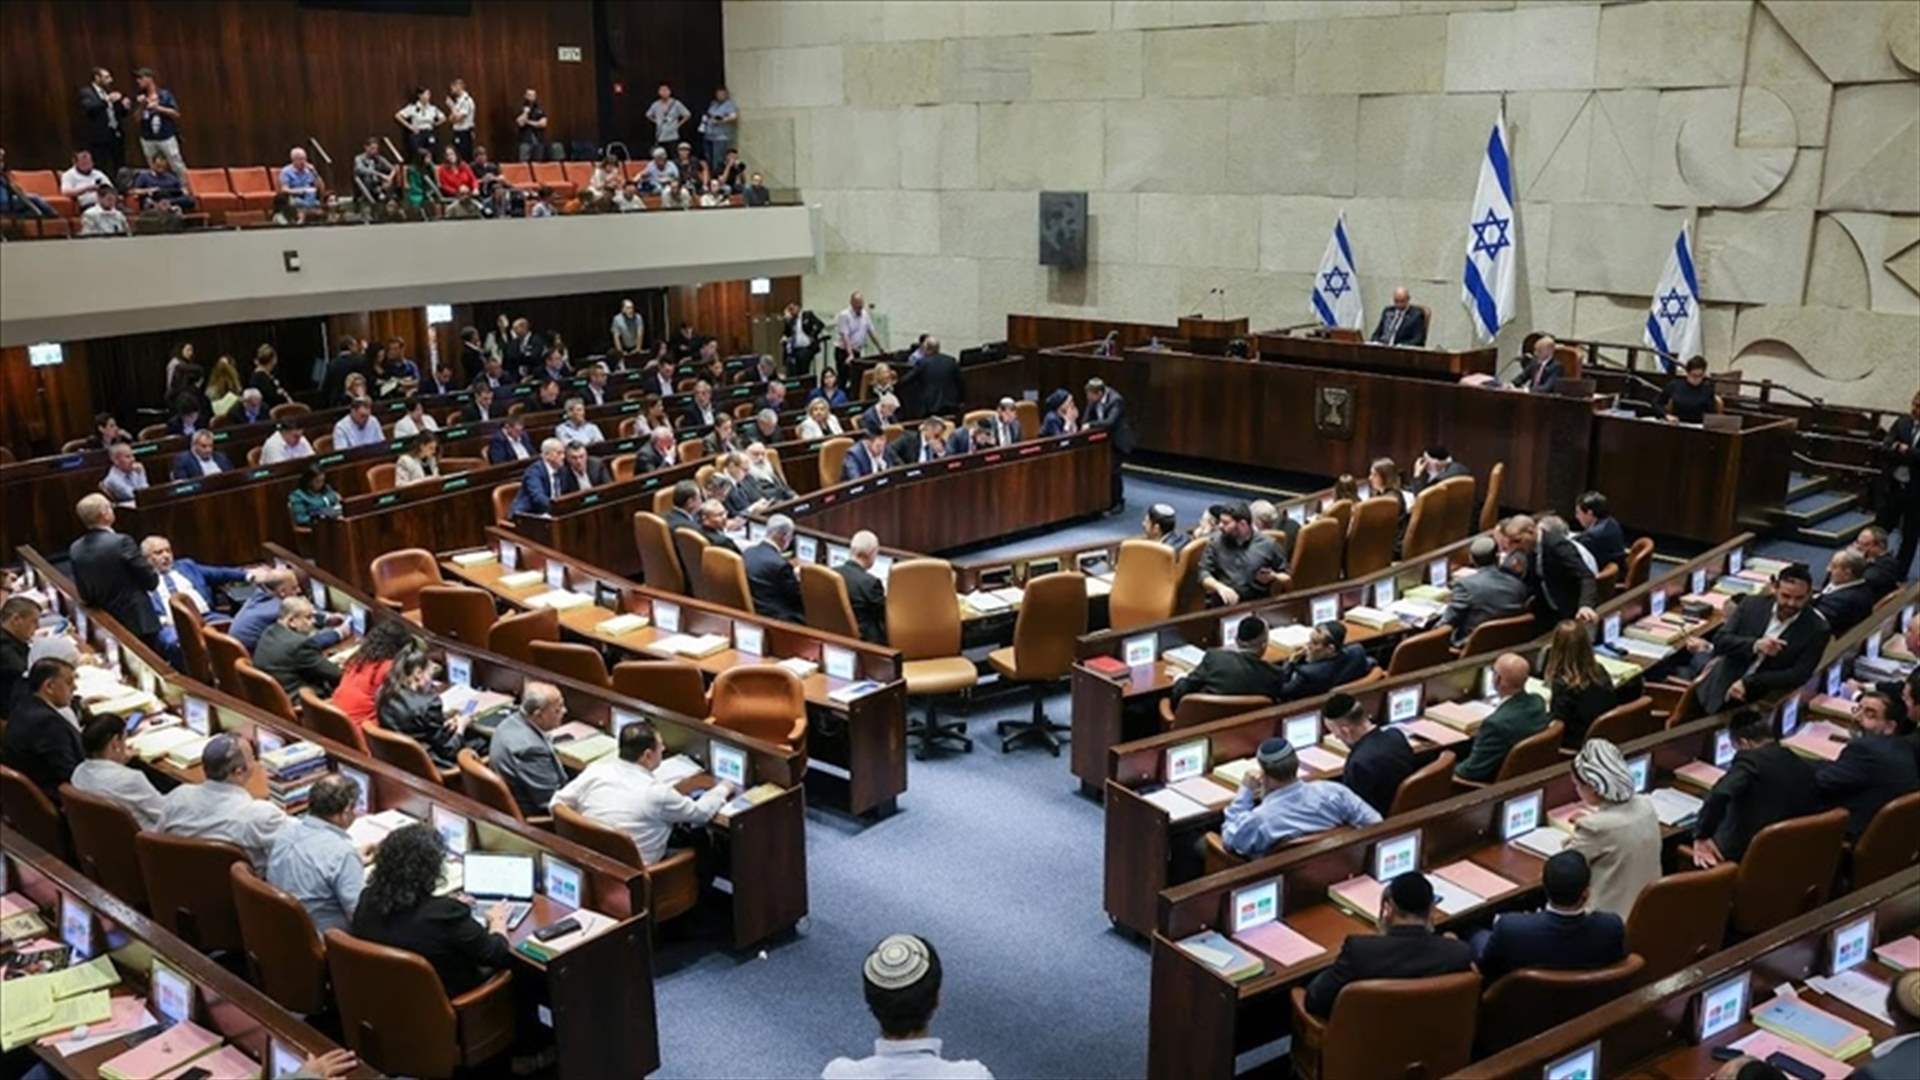 غانتس سيستقيل من حكومة الطوارئ إذا تم إعفاء اليهود المتشددين من الخدمة العسكرية الإلزامية 